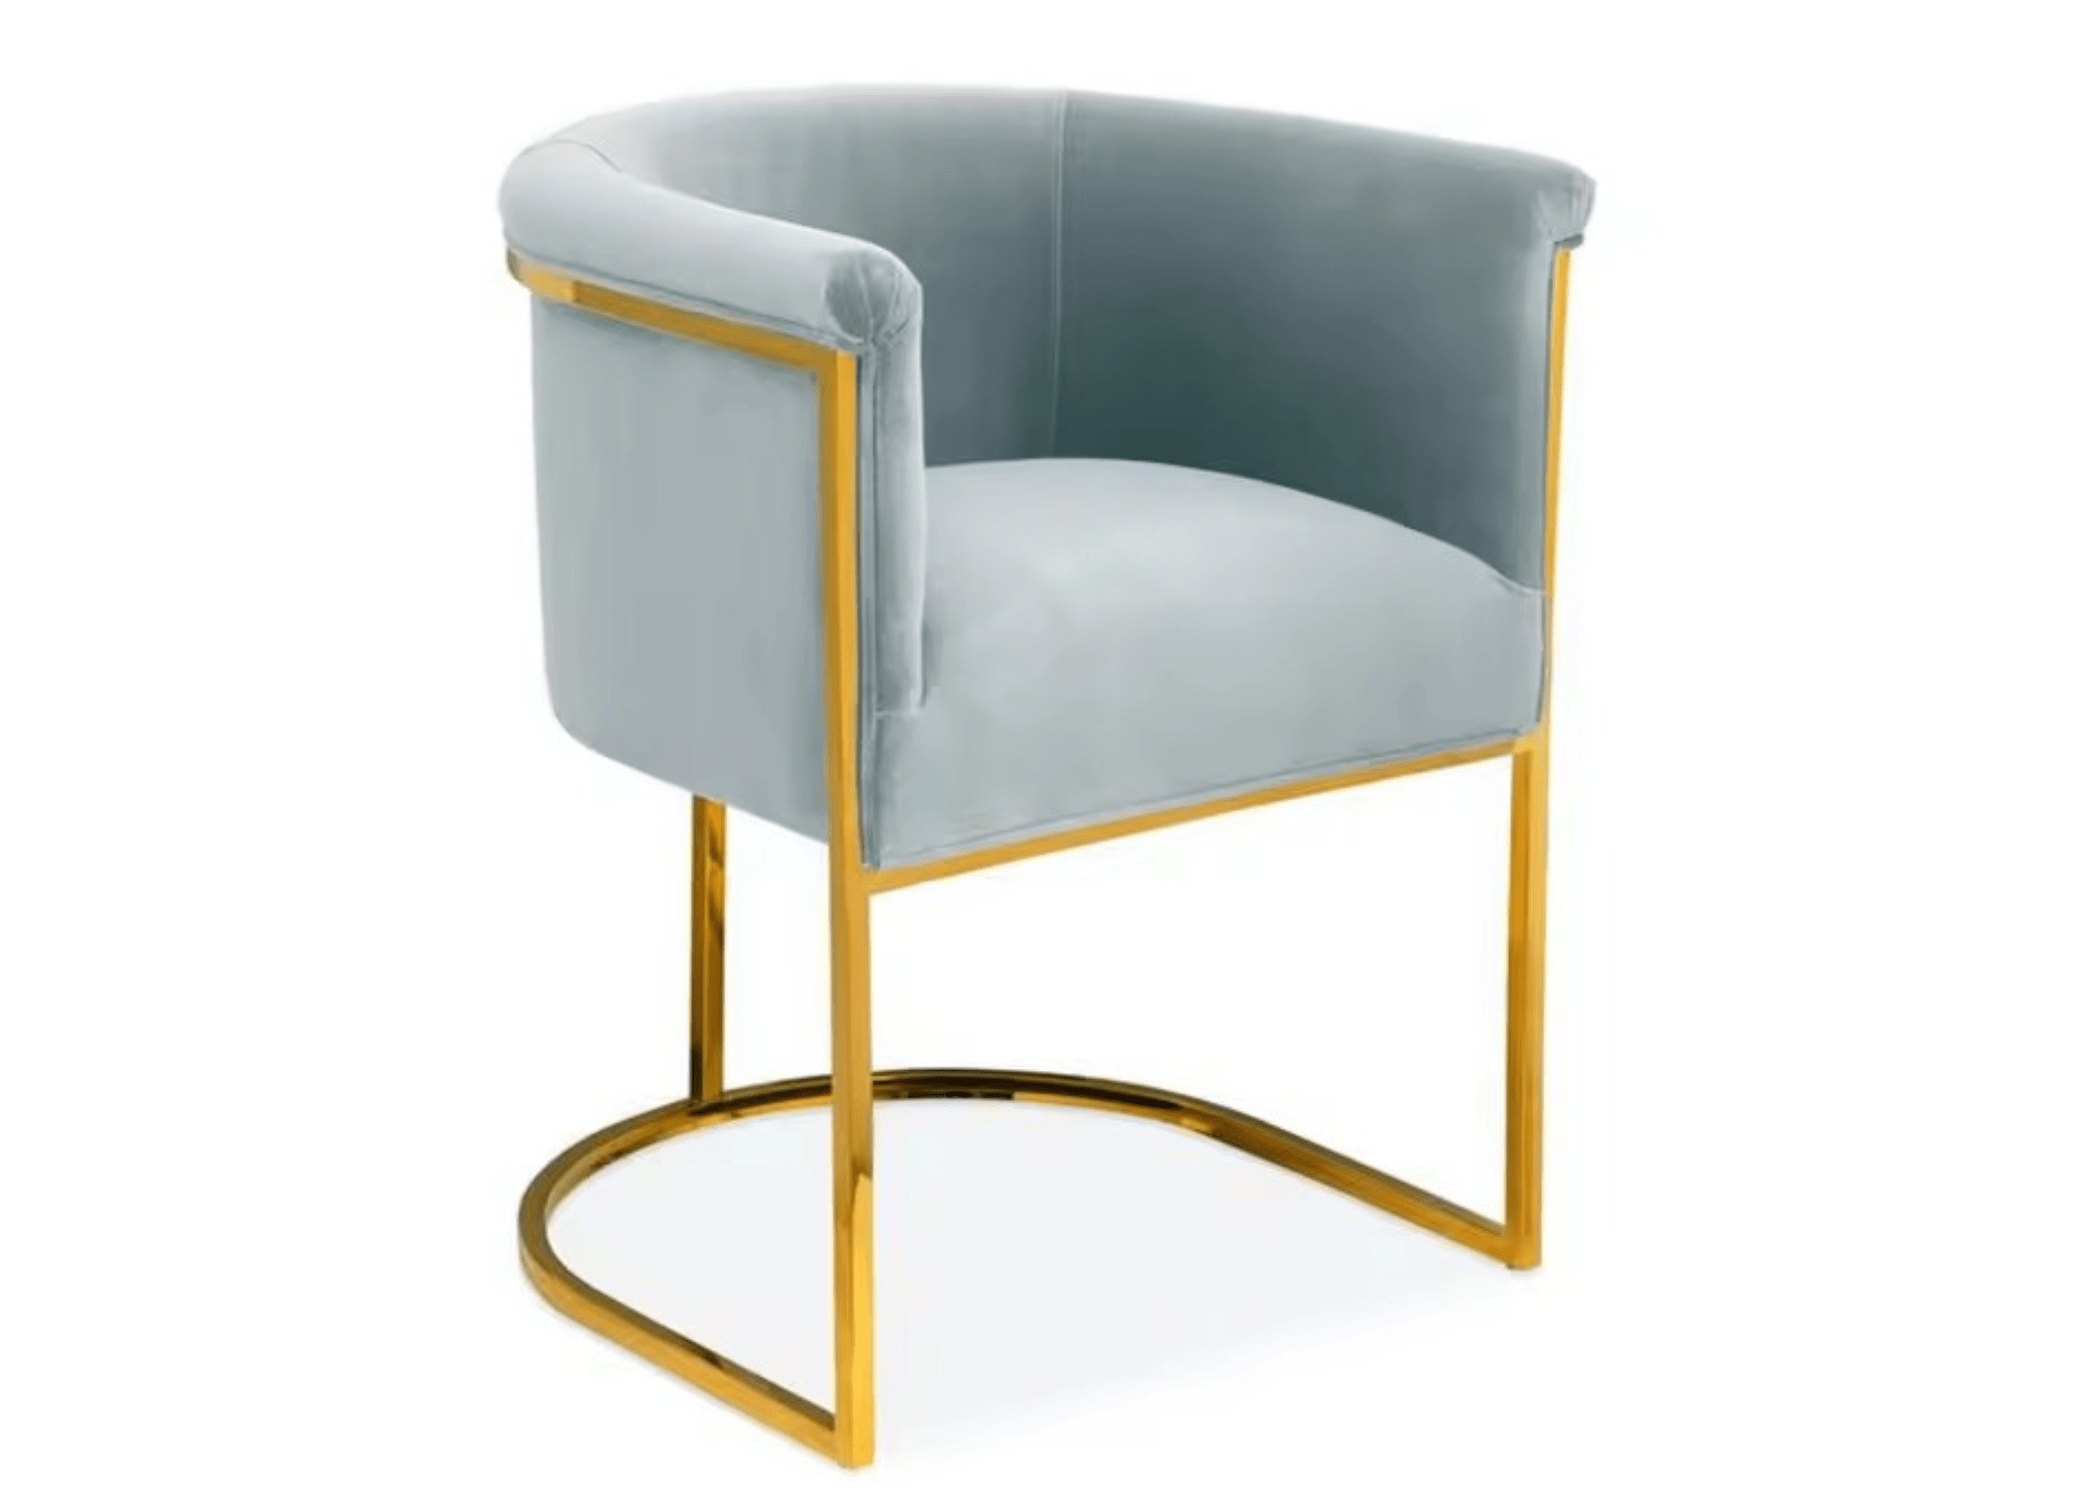 Estética moderna: Cadeira Vegas oferece conforto e sofisticação em um só móvel.